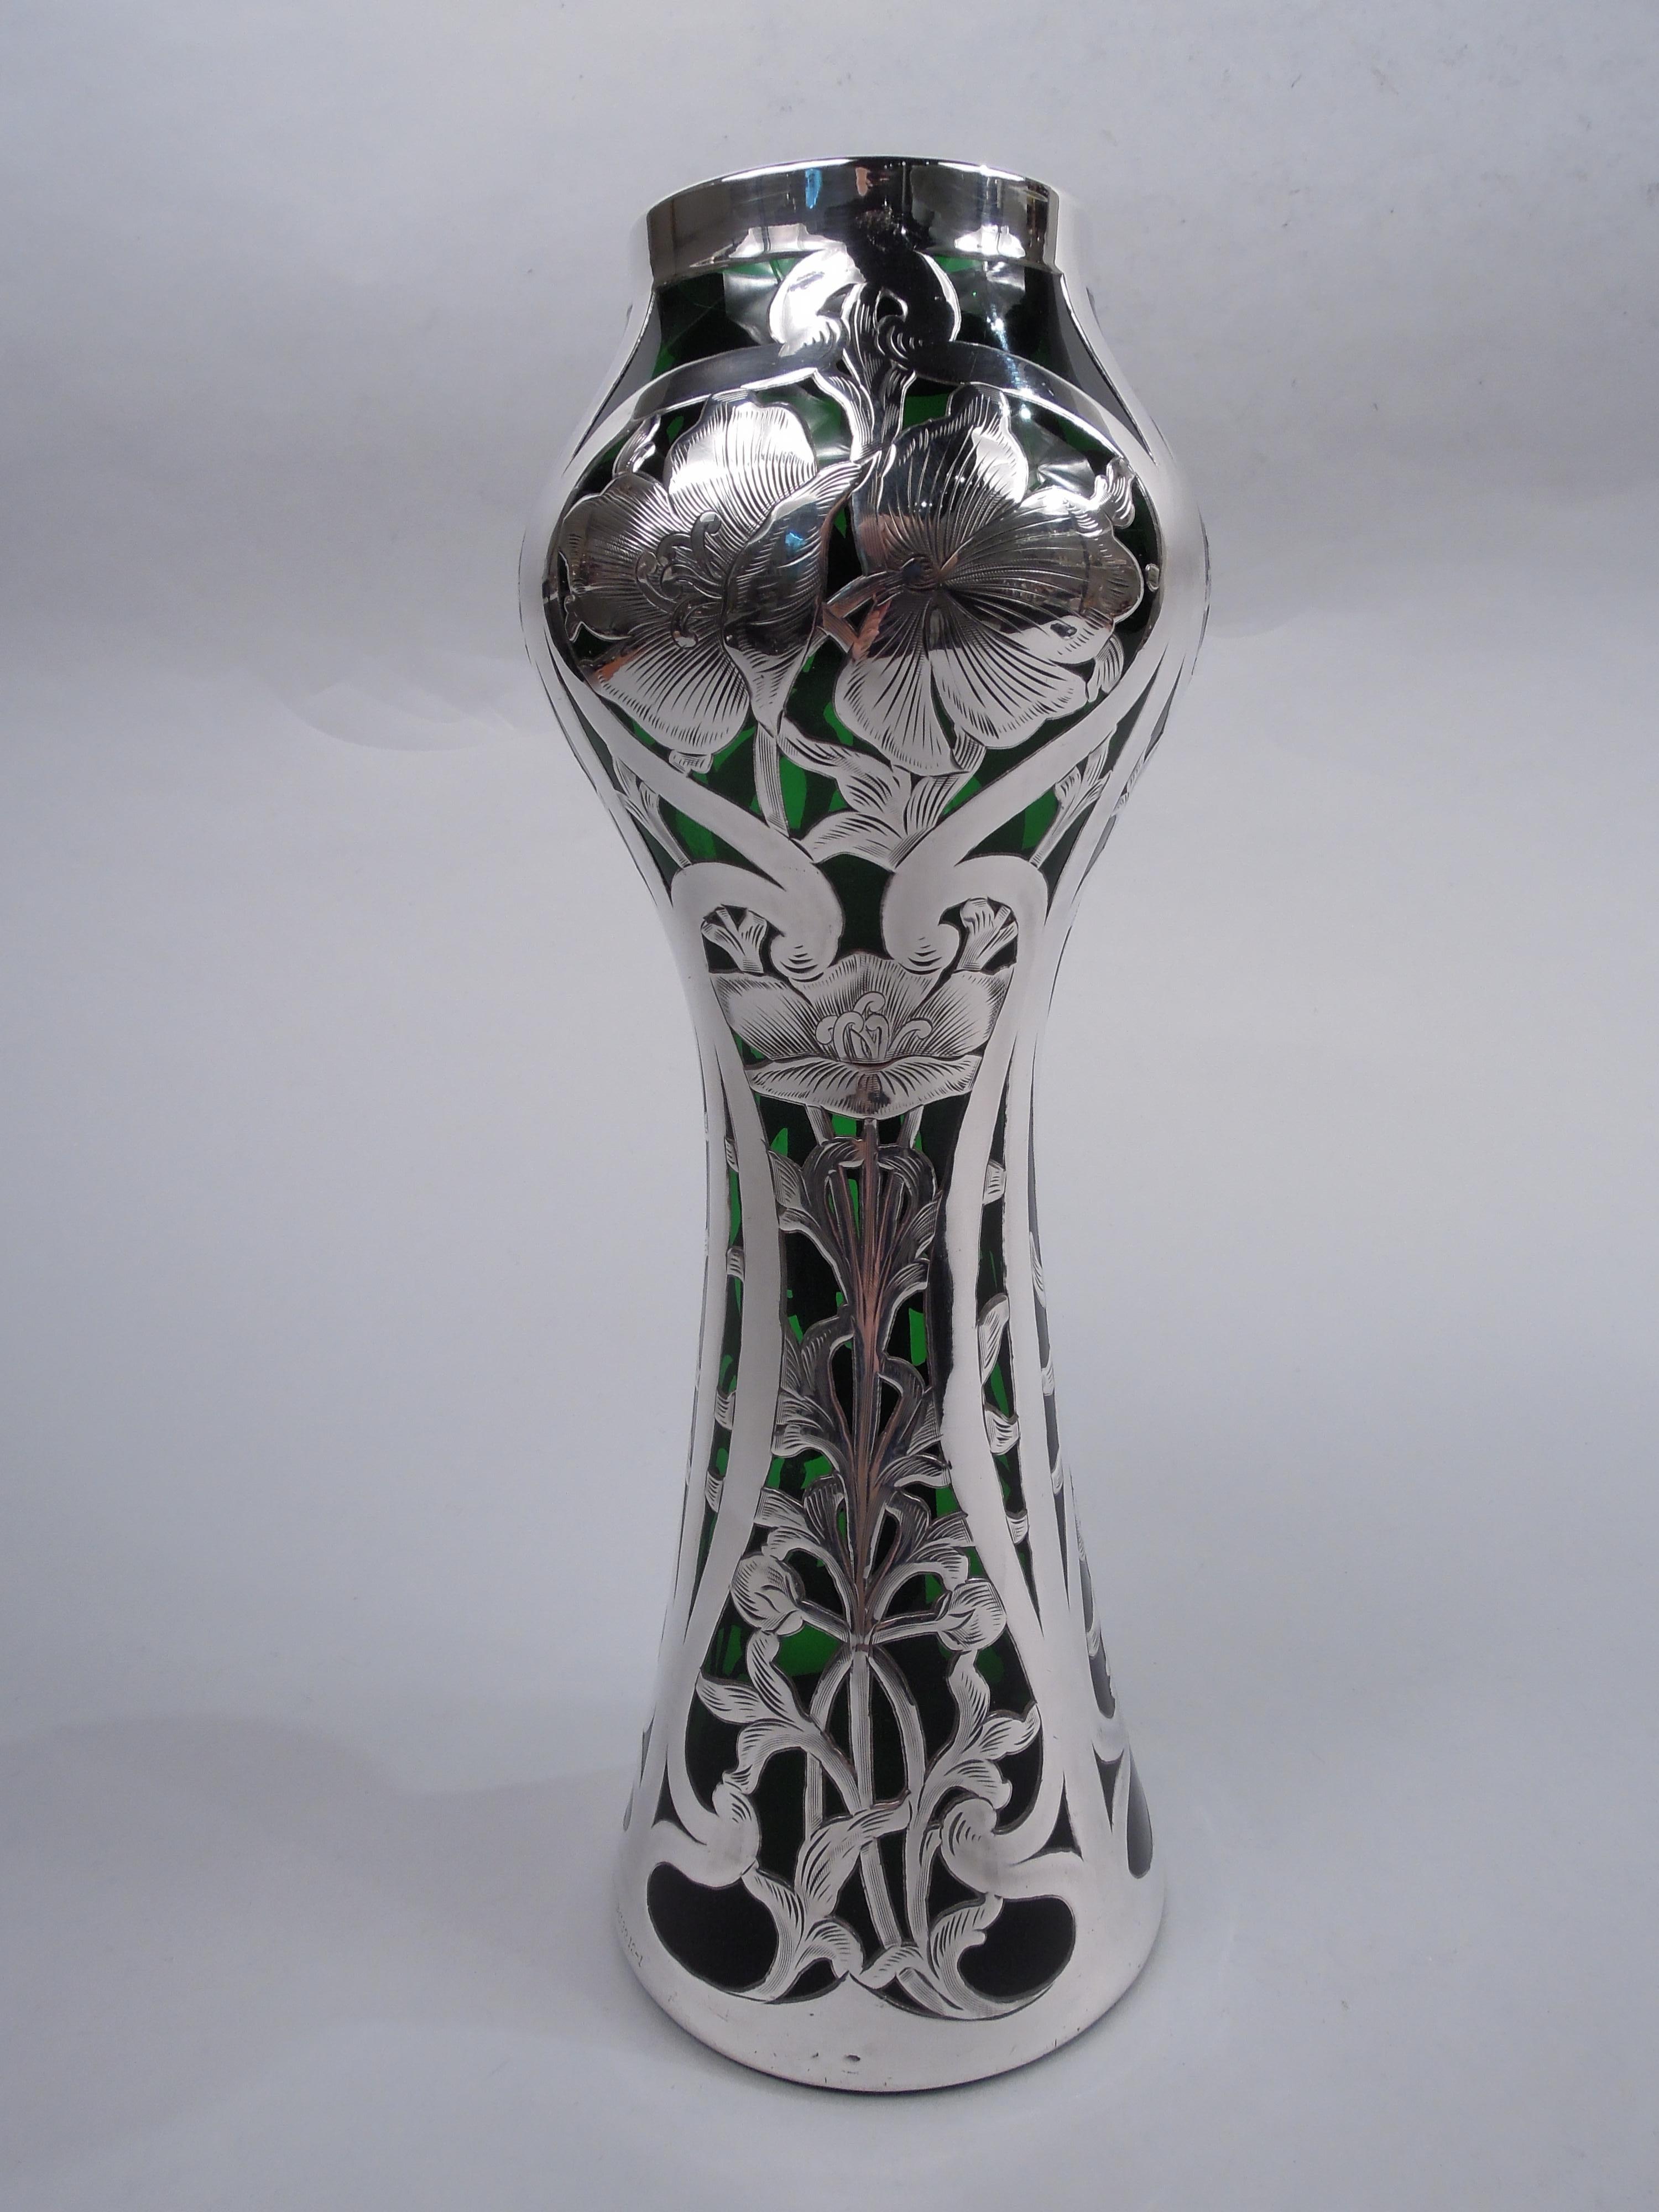 Vase en verre de style Art Nouveau, avec un revêtement en argent gravé. Fabriqué par Alvin Corp. à Providence, vers 1900. Balustre sur cône. Superposition sous forme de tiges fleuries verticales surplombant des cadres larges et unis en volutes et en